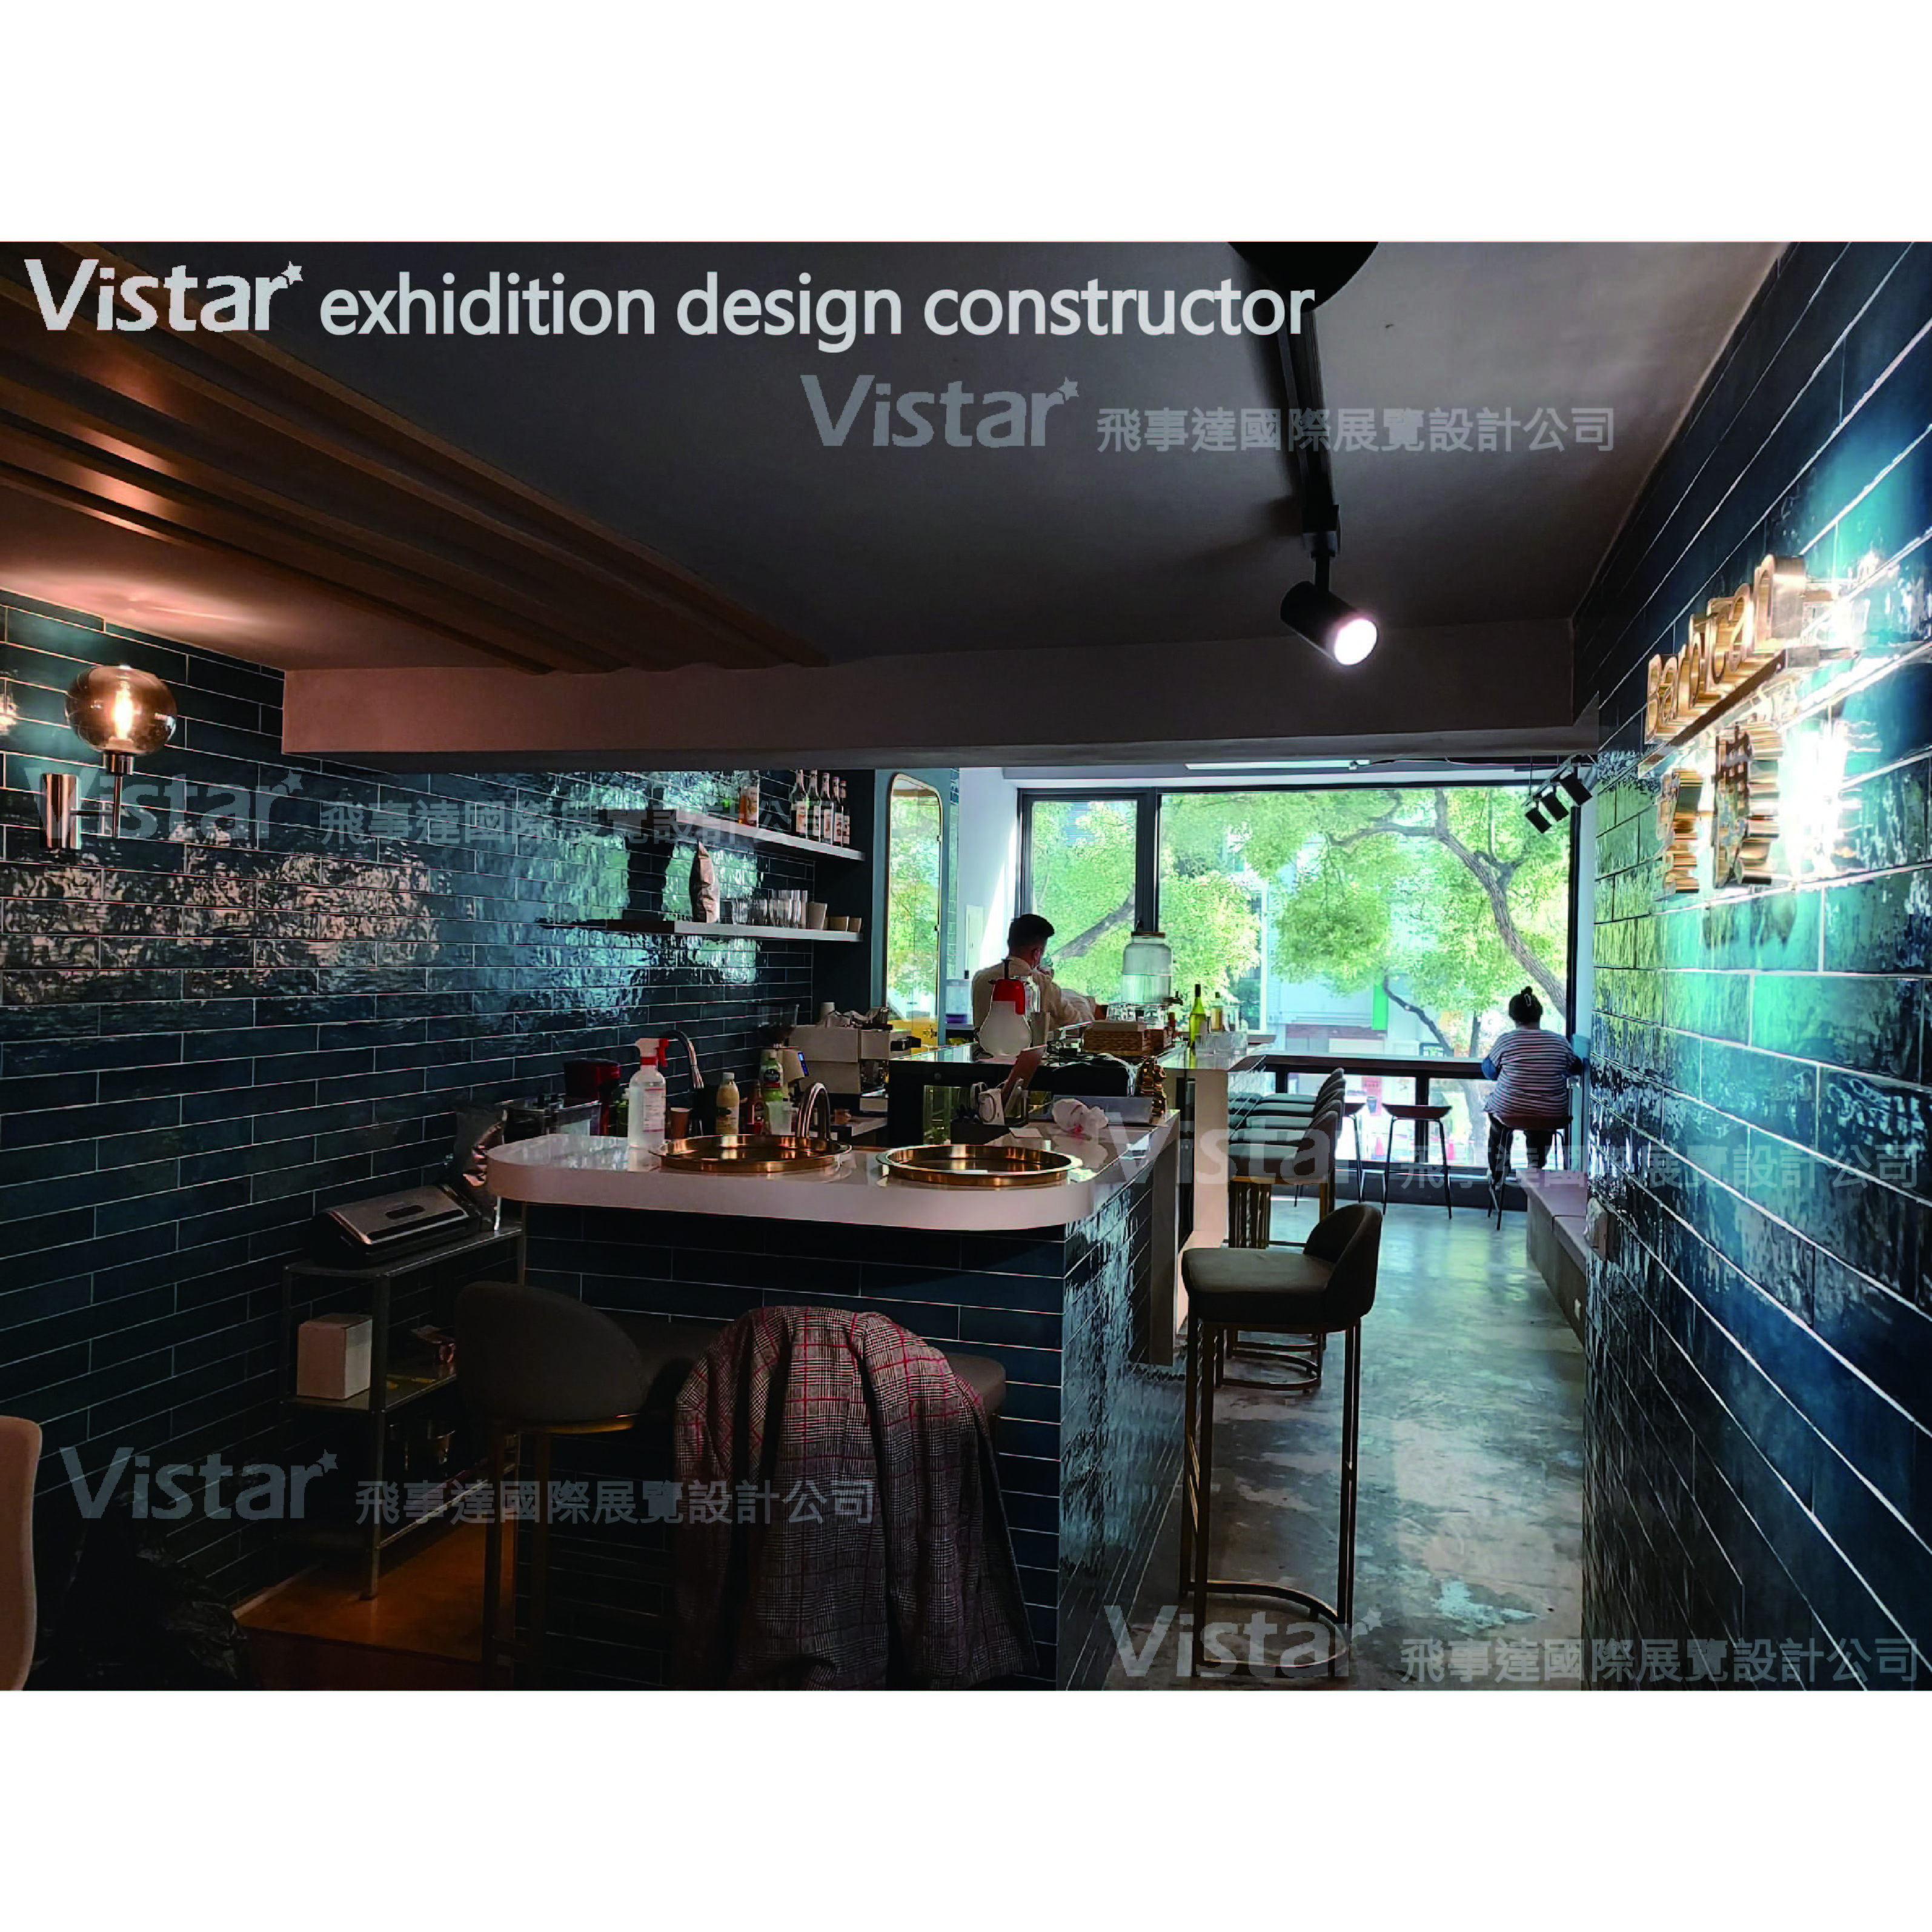 2022 高雄望樓 Barbican, 飛事達國際展覽設計有限公司, www.vistargp.com